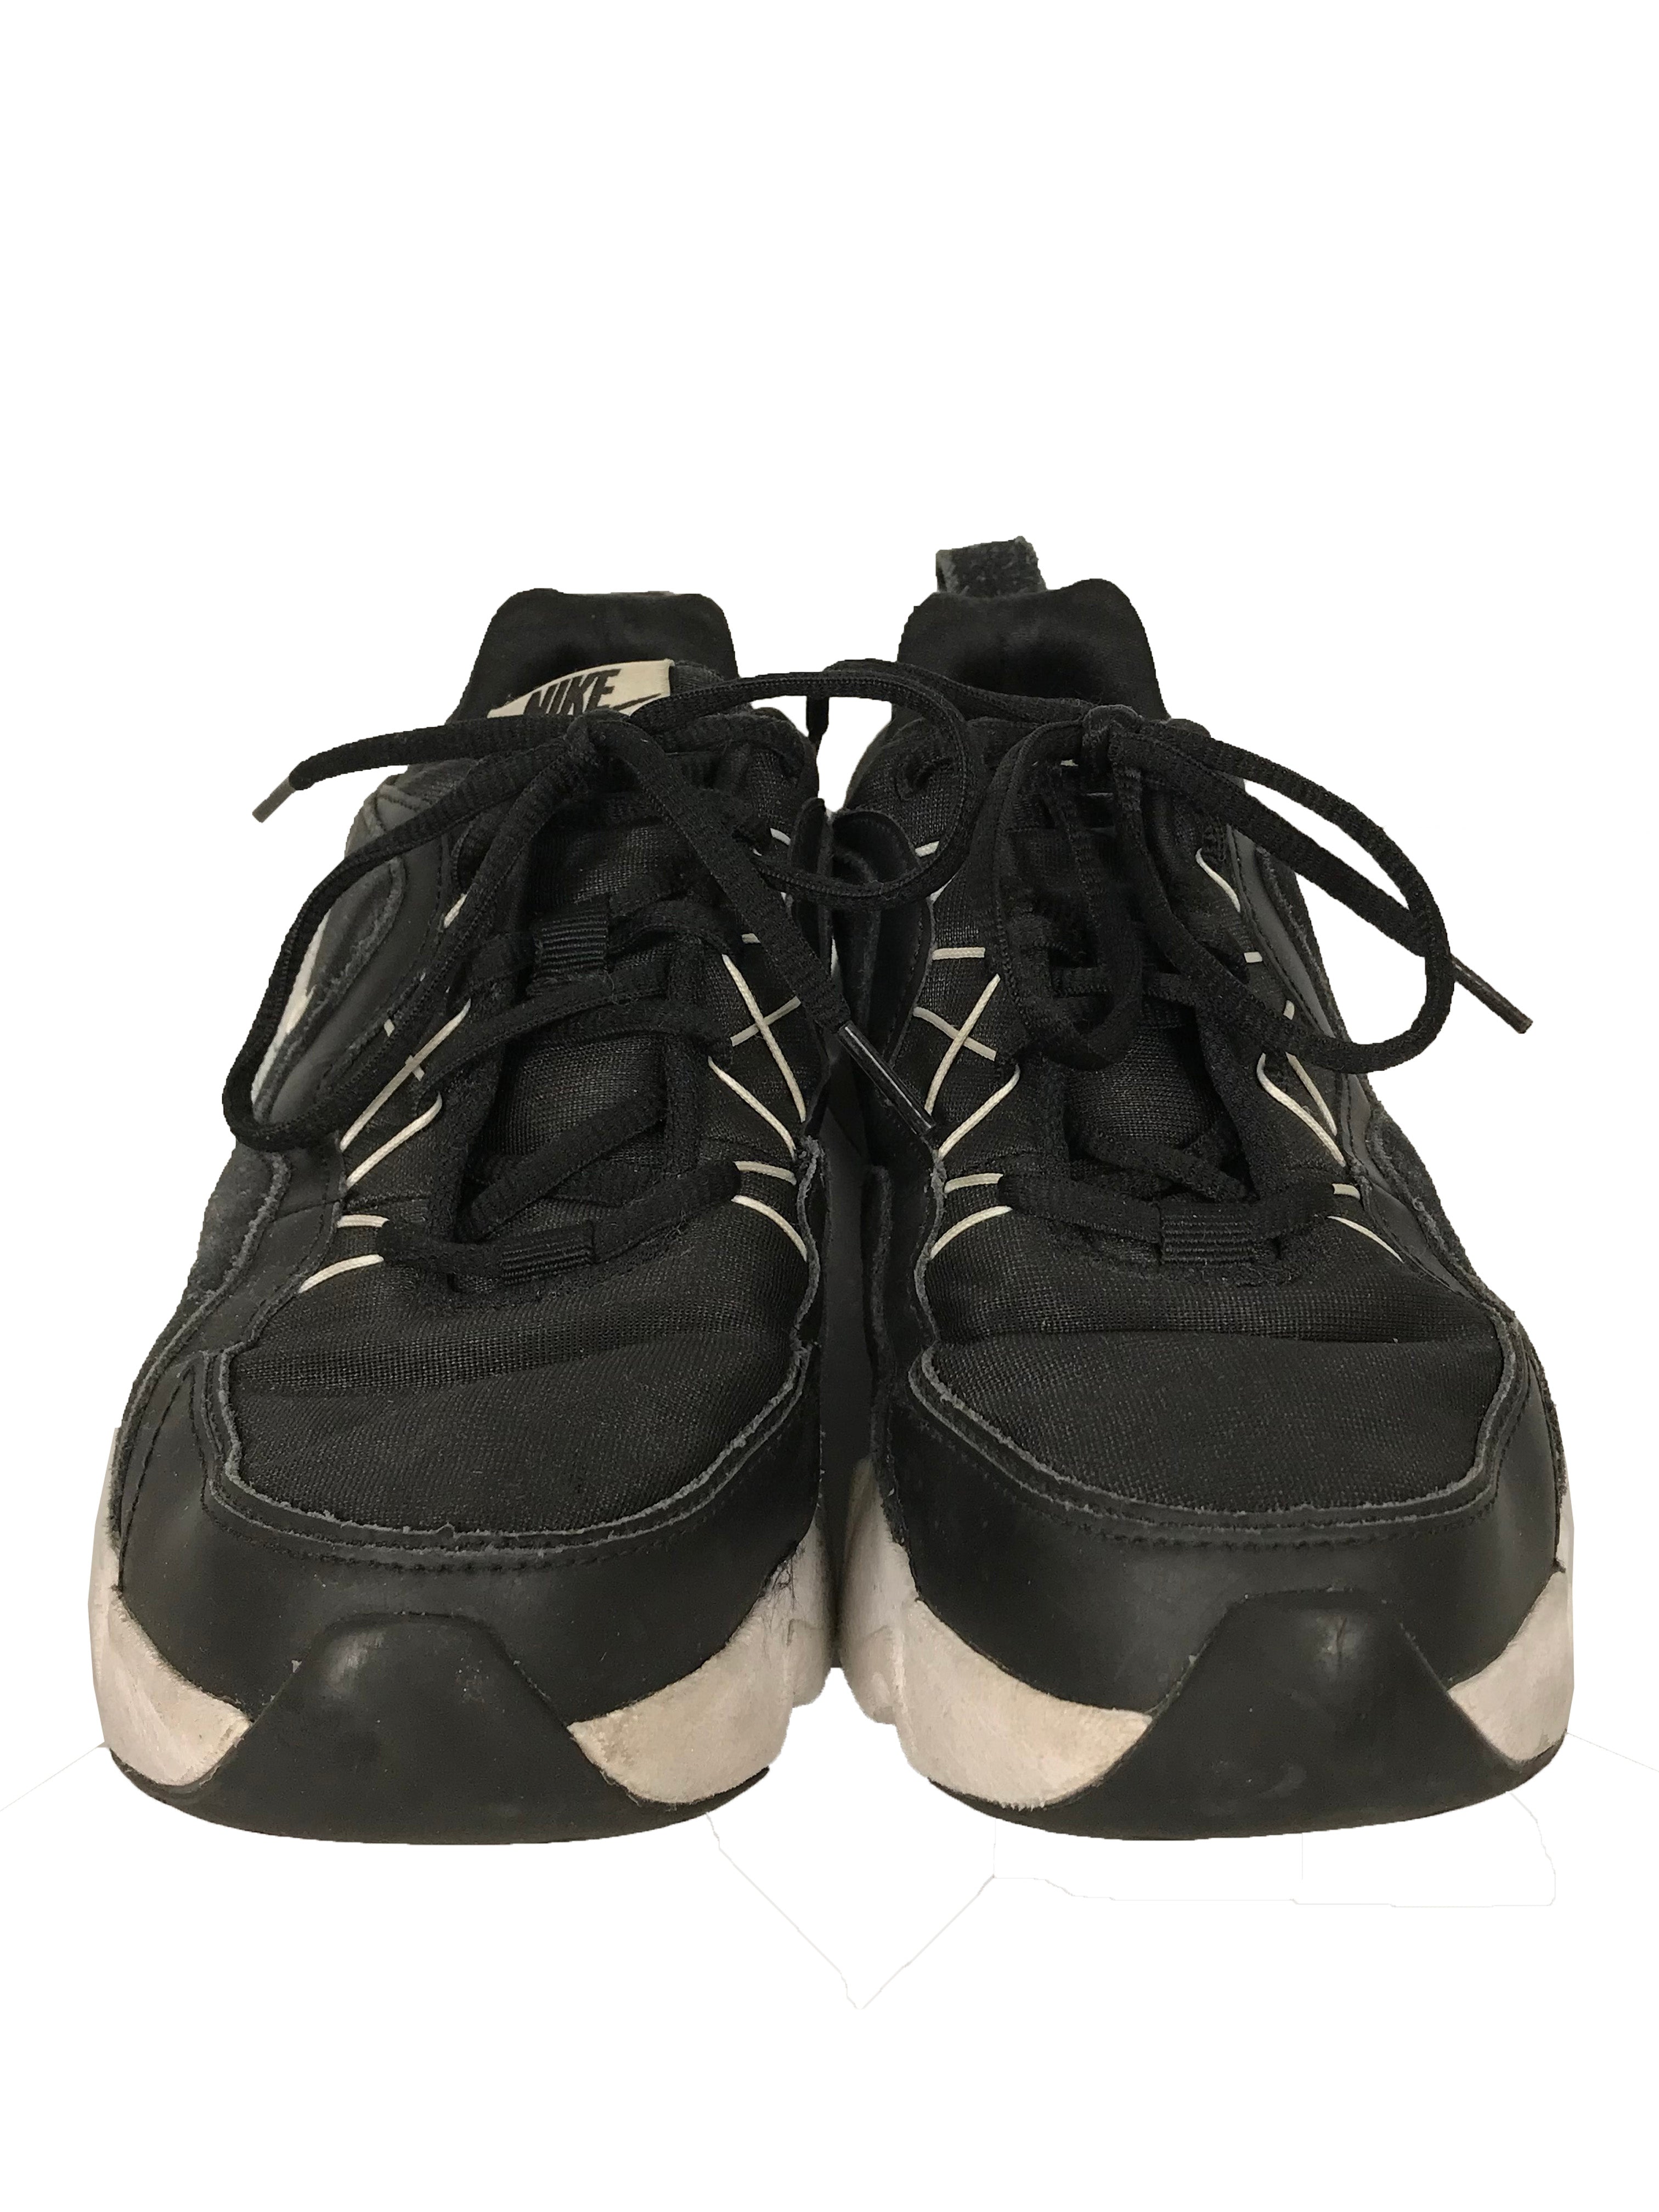 Nike Black & White RYZ 365 Shoes Women's Size 9